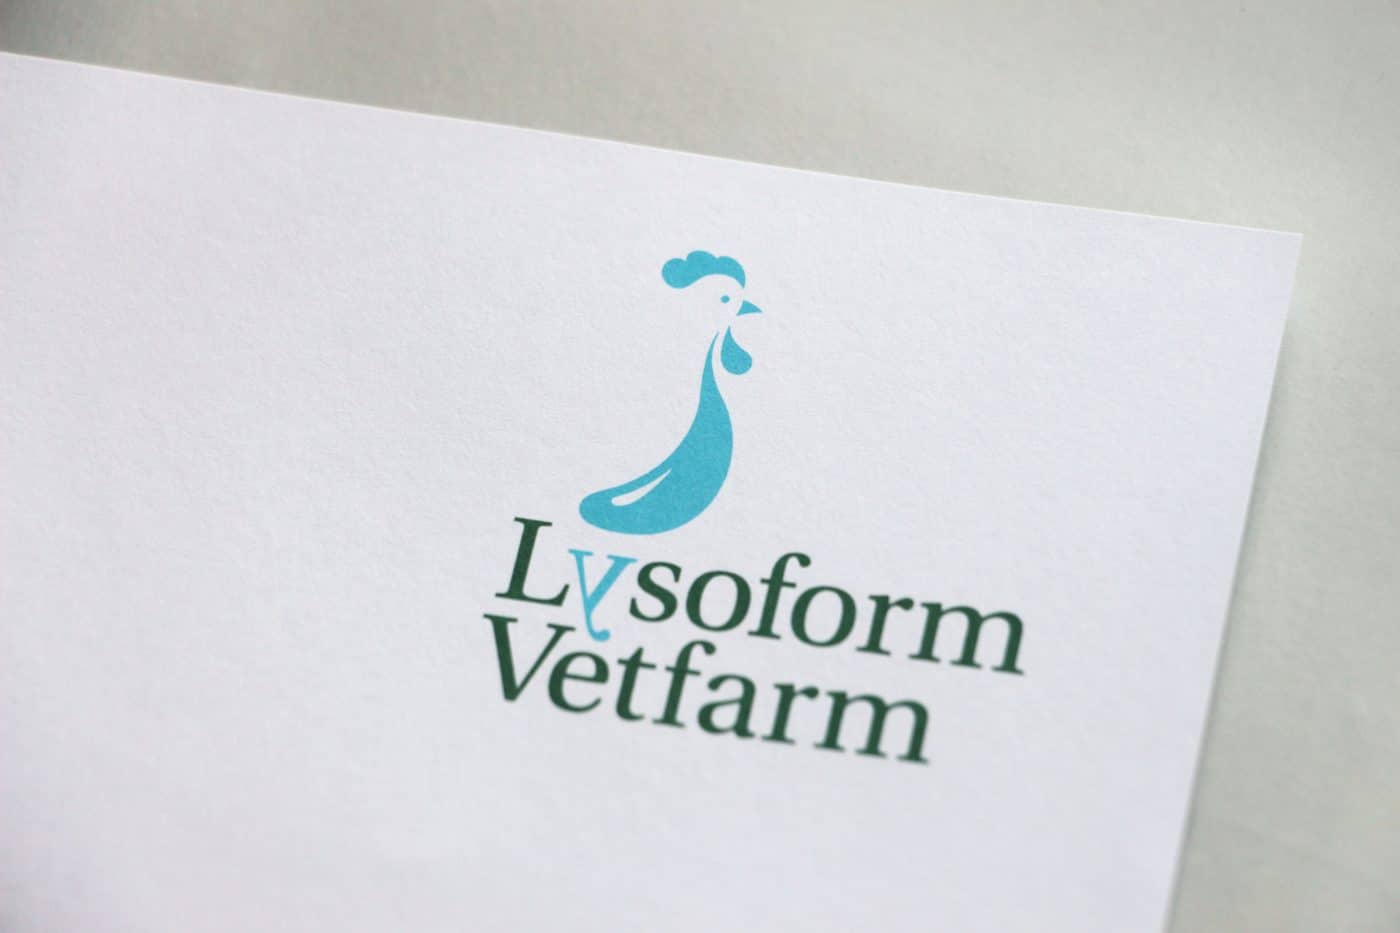 lysoform briefbogen - Eine neue Marke auf starke Füße gestellt – Corporate Design, Logoentwicklung, Grafikdesign, Webdesign, Kommunikationsdesign, Branding, Markenentwicklung